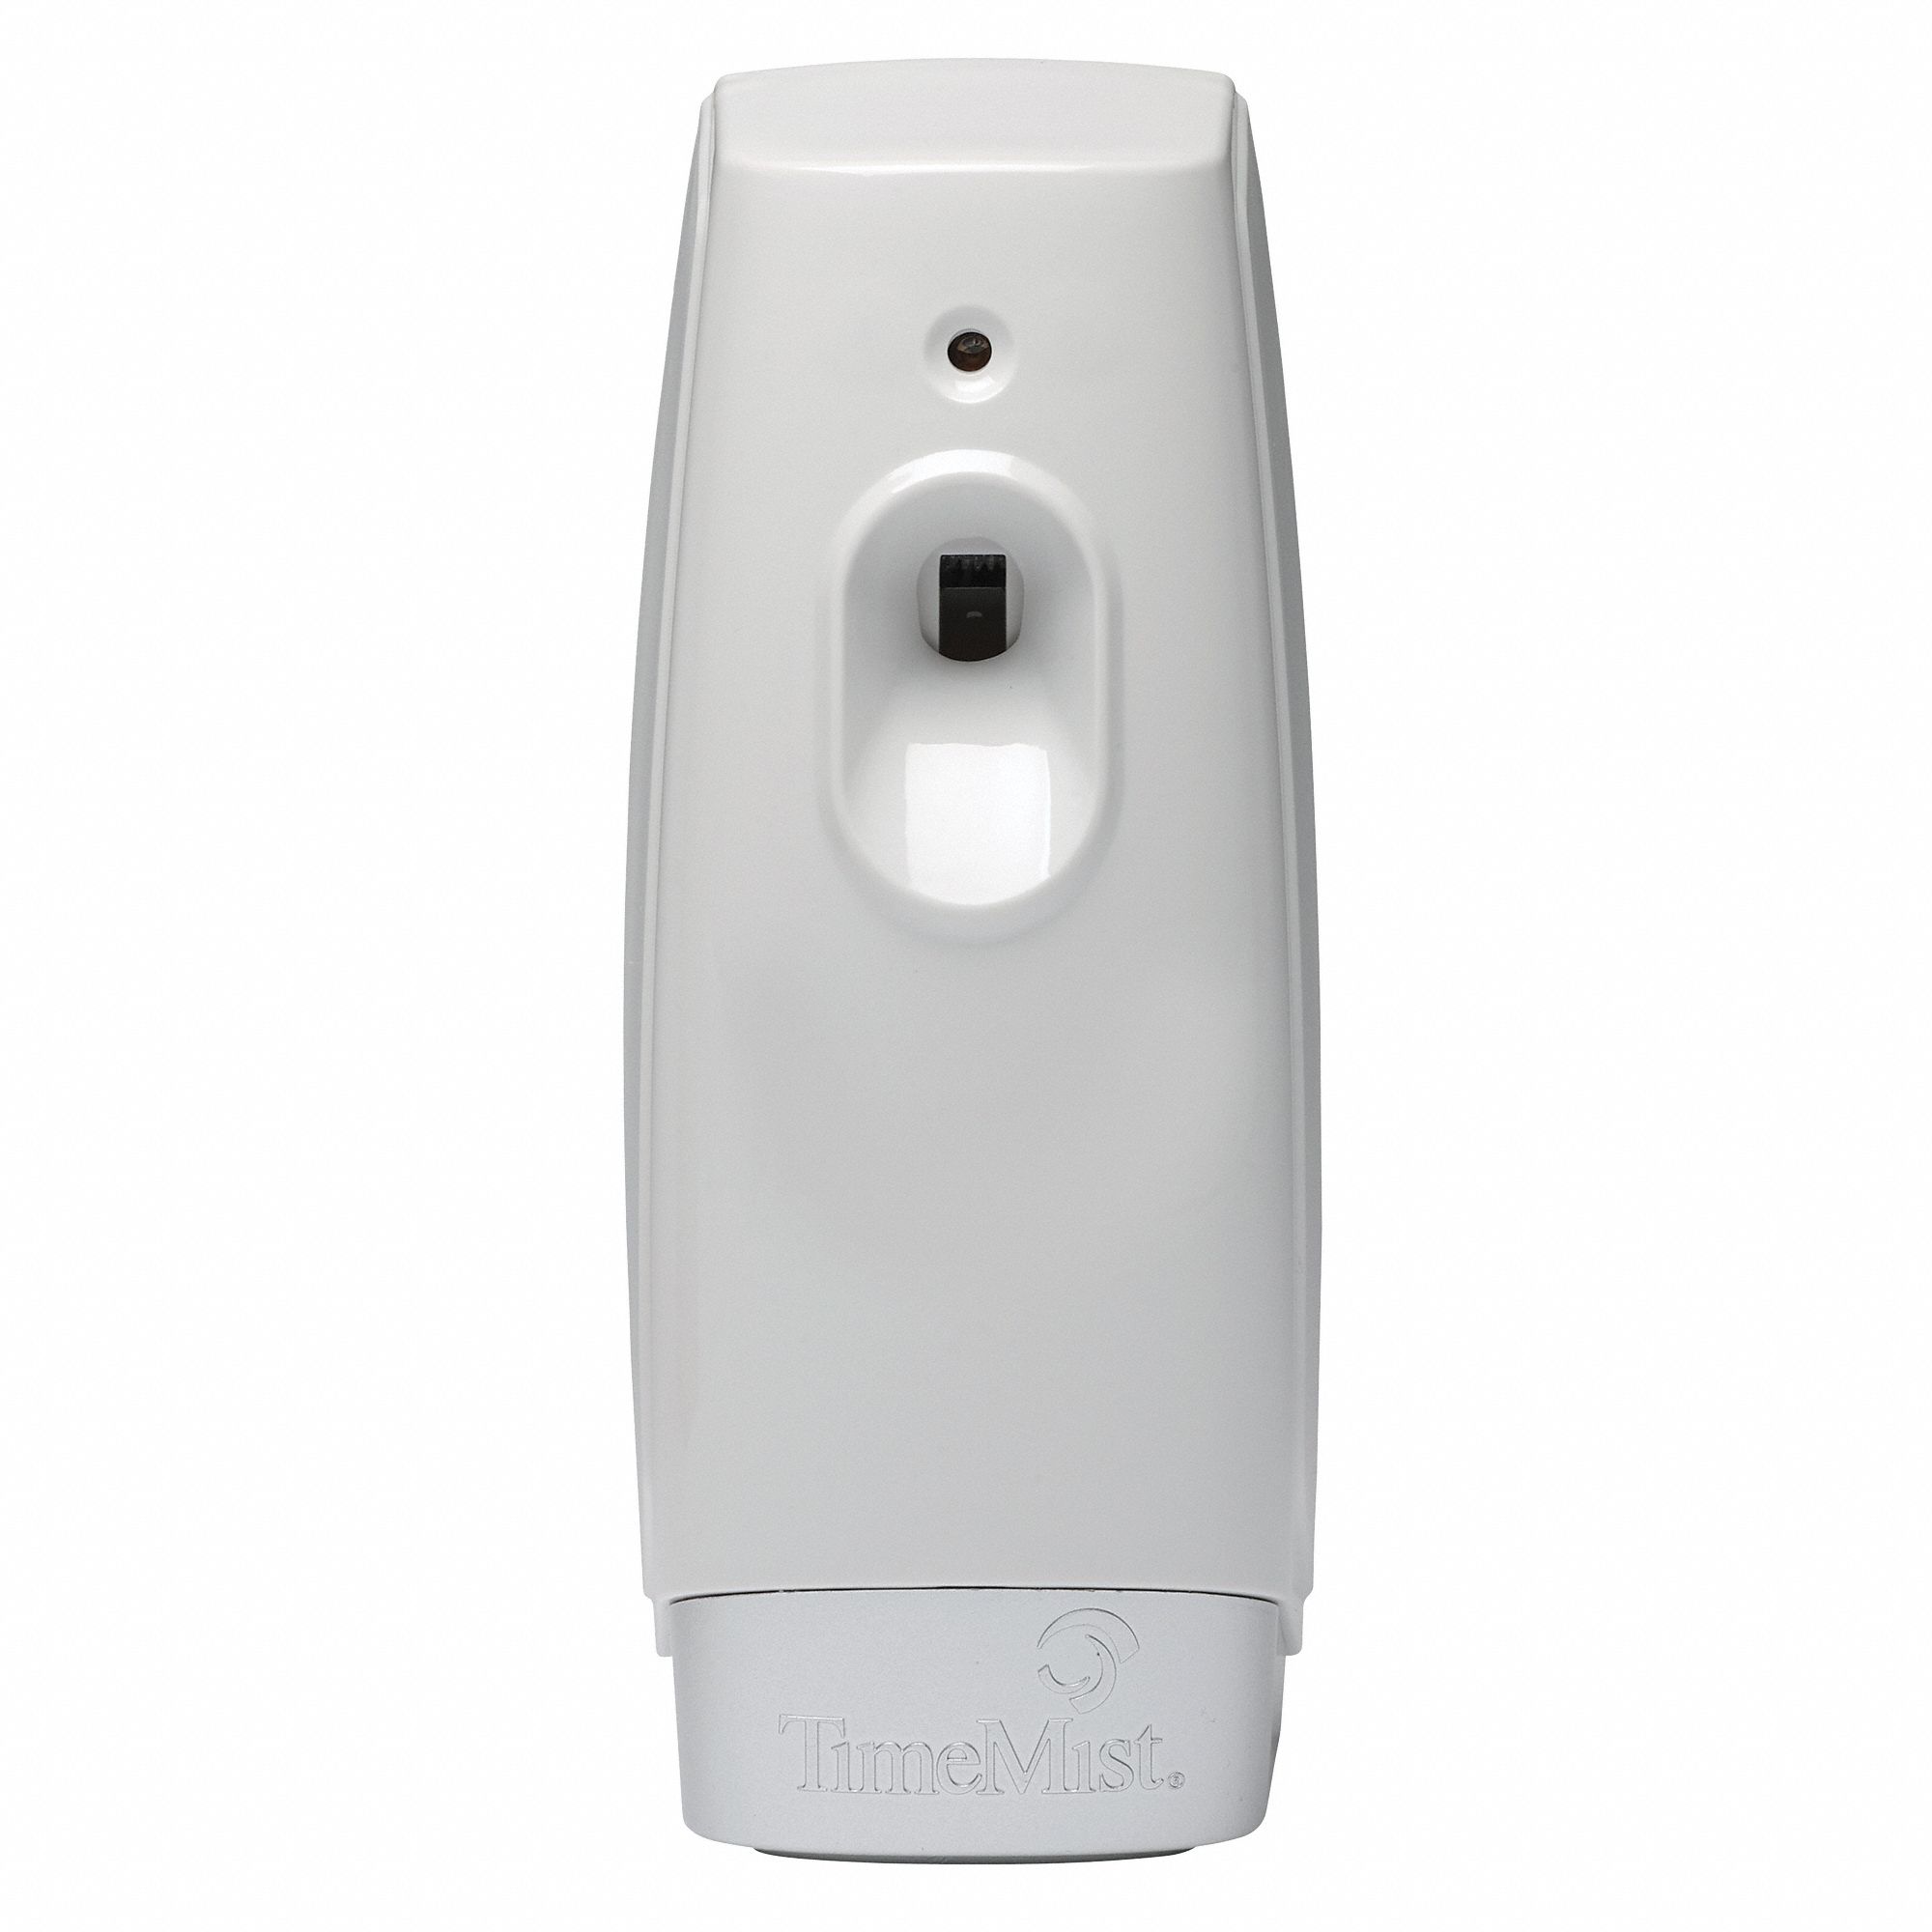 Air Freshener Dispenser: TimeMist®, Wall, Dispenser Only, Aerosol Spray, White, 3 3/4 in Dp